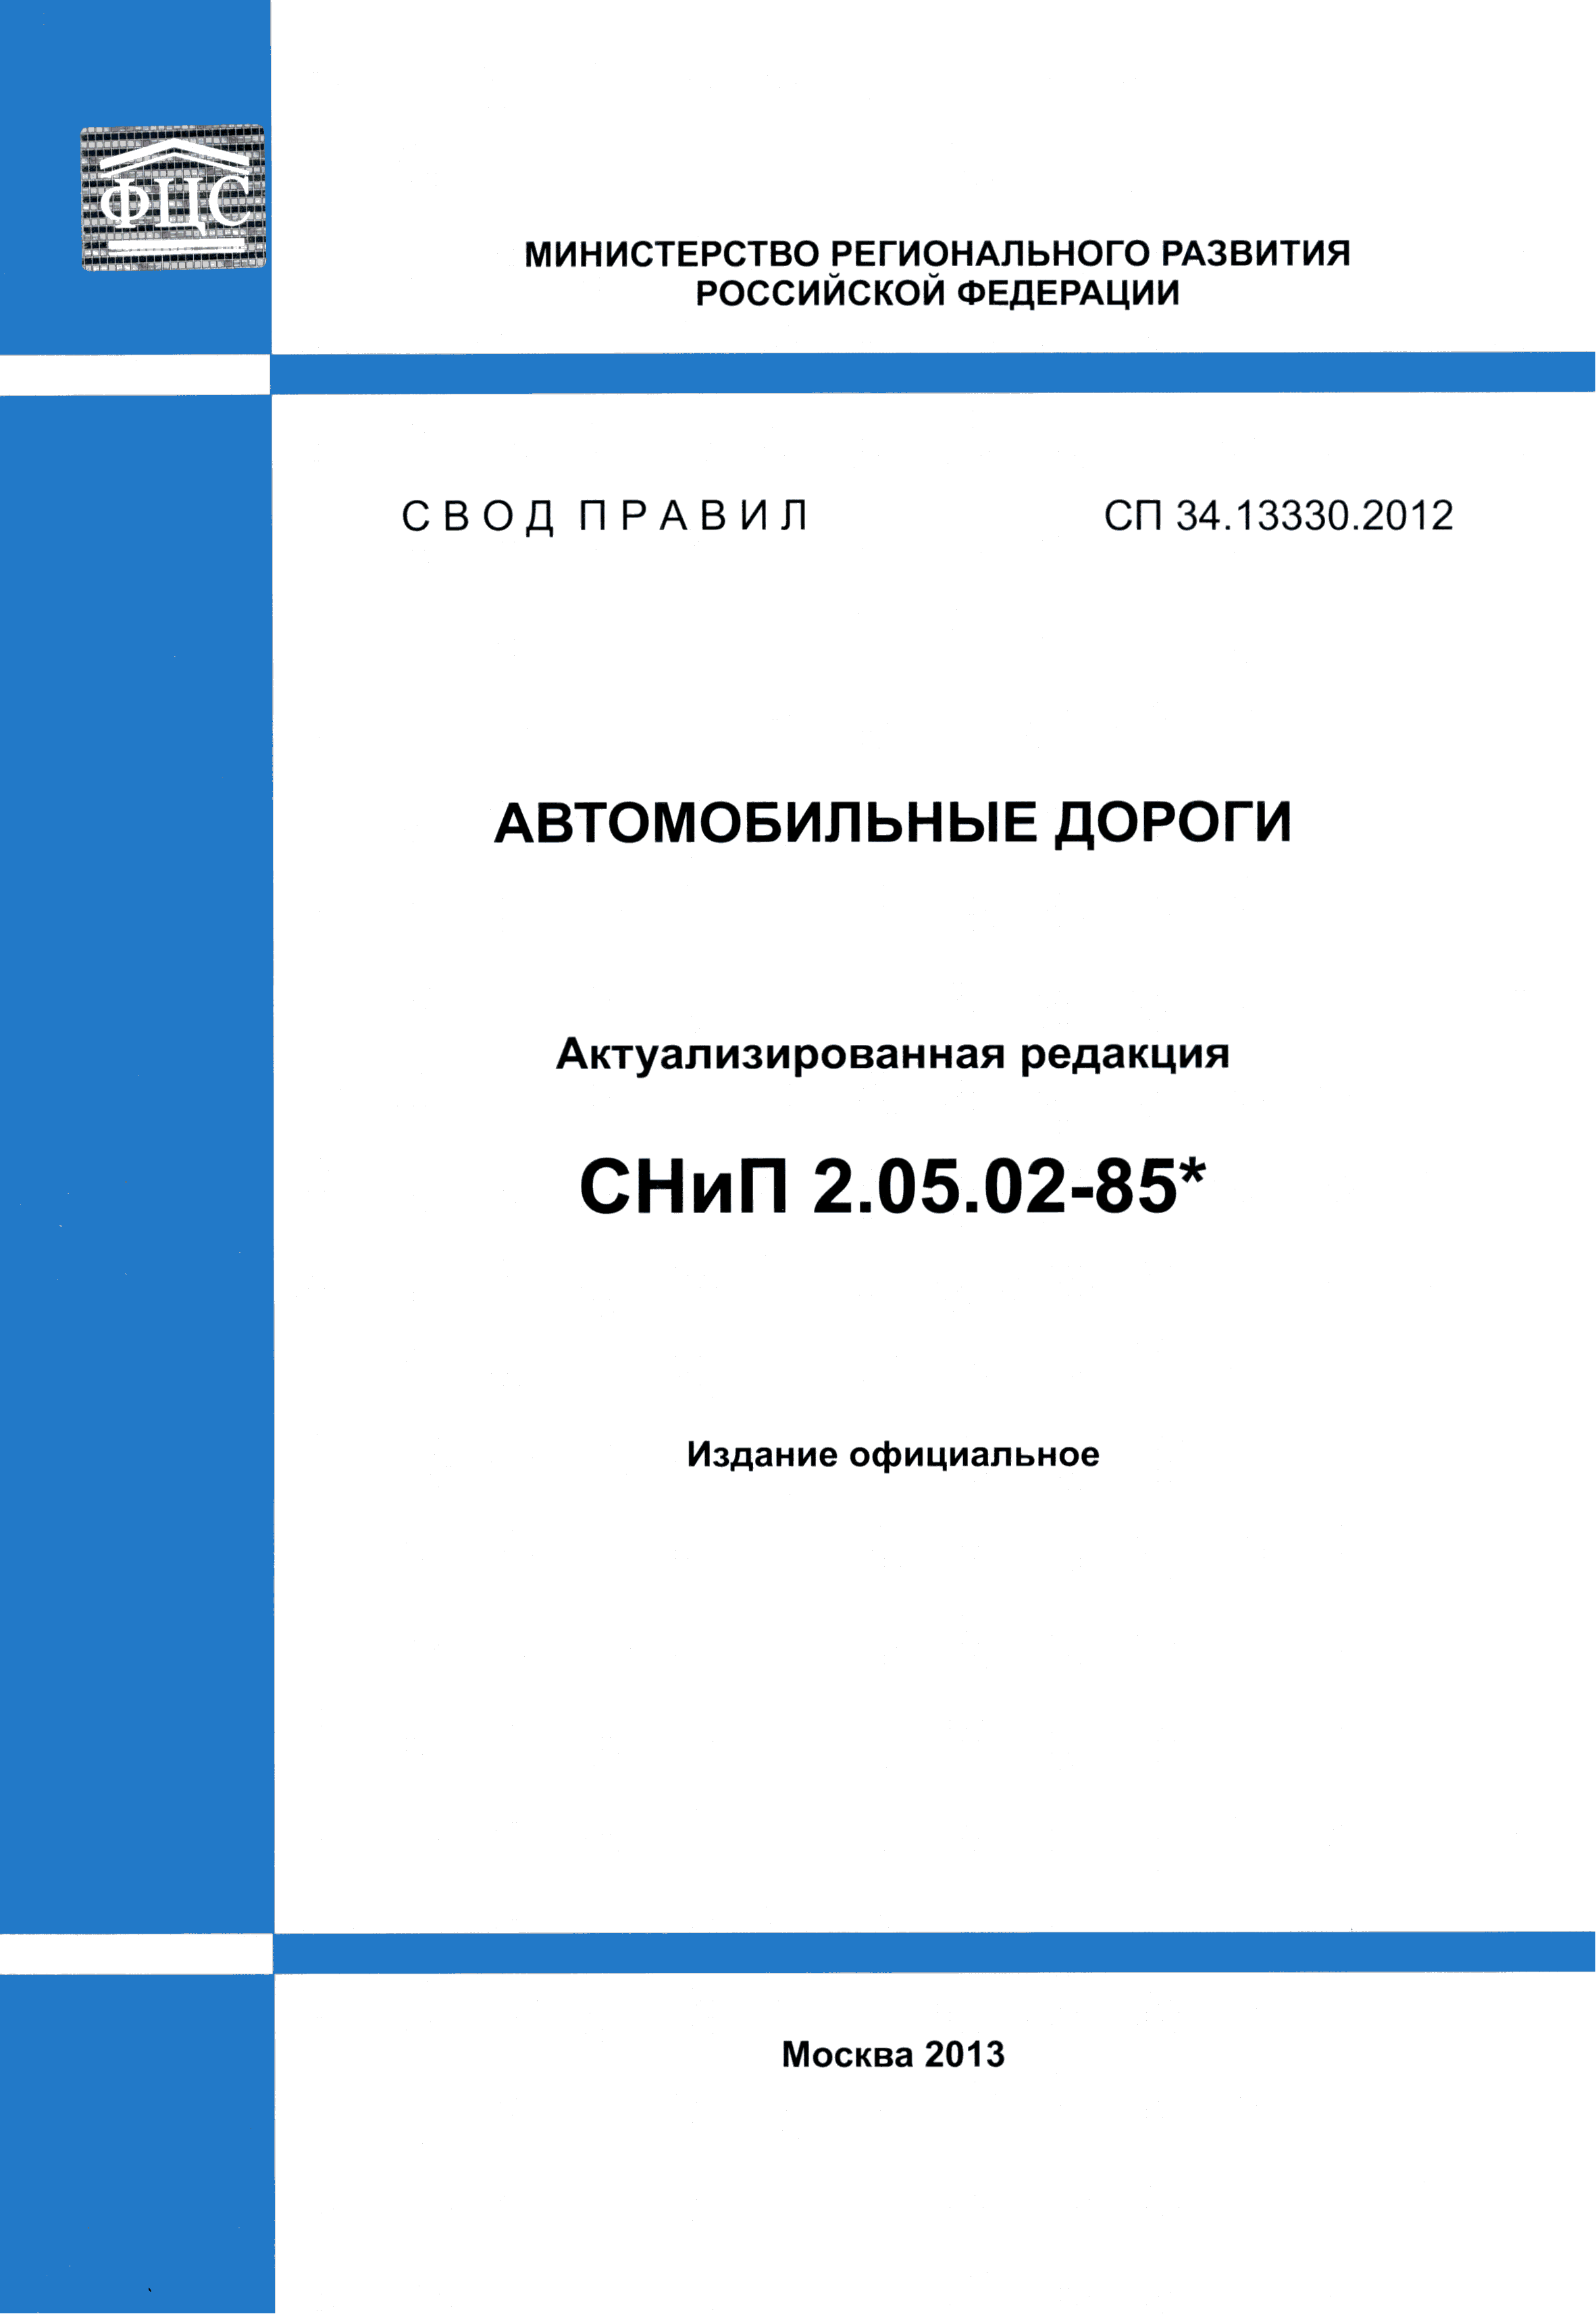 СП 34.13330.2012